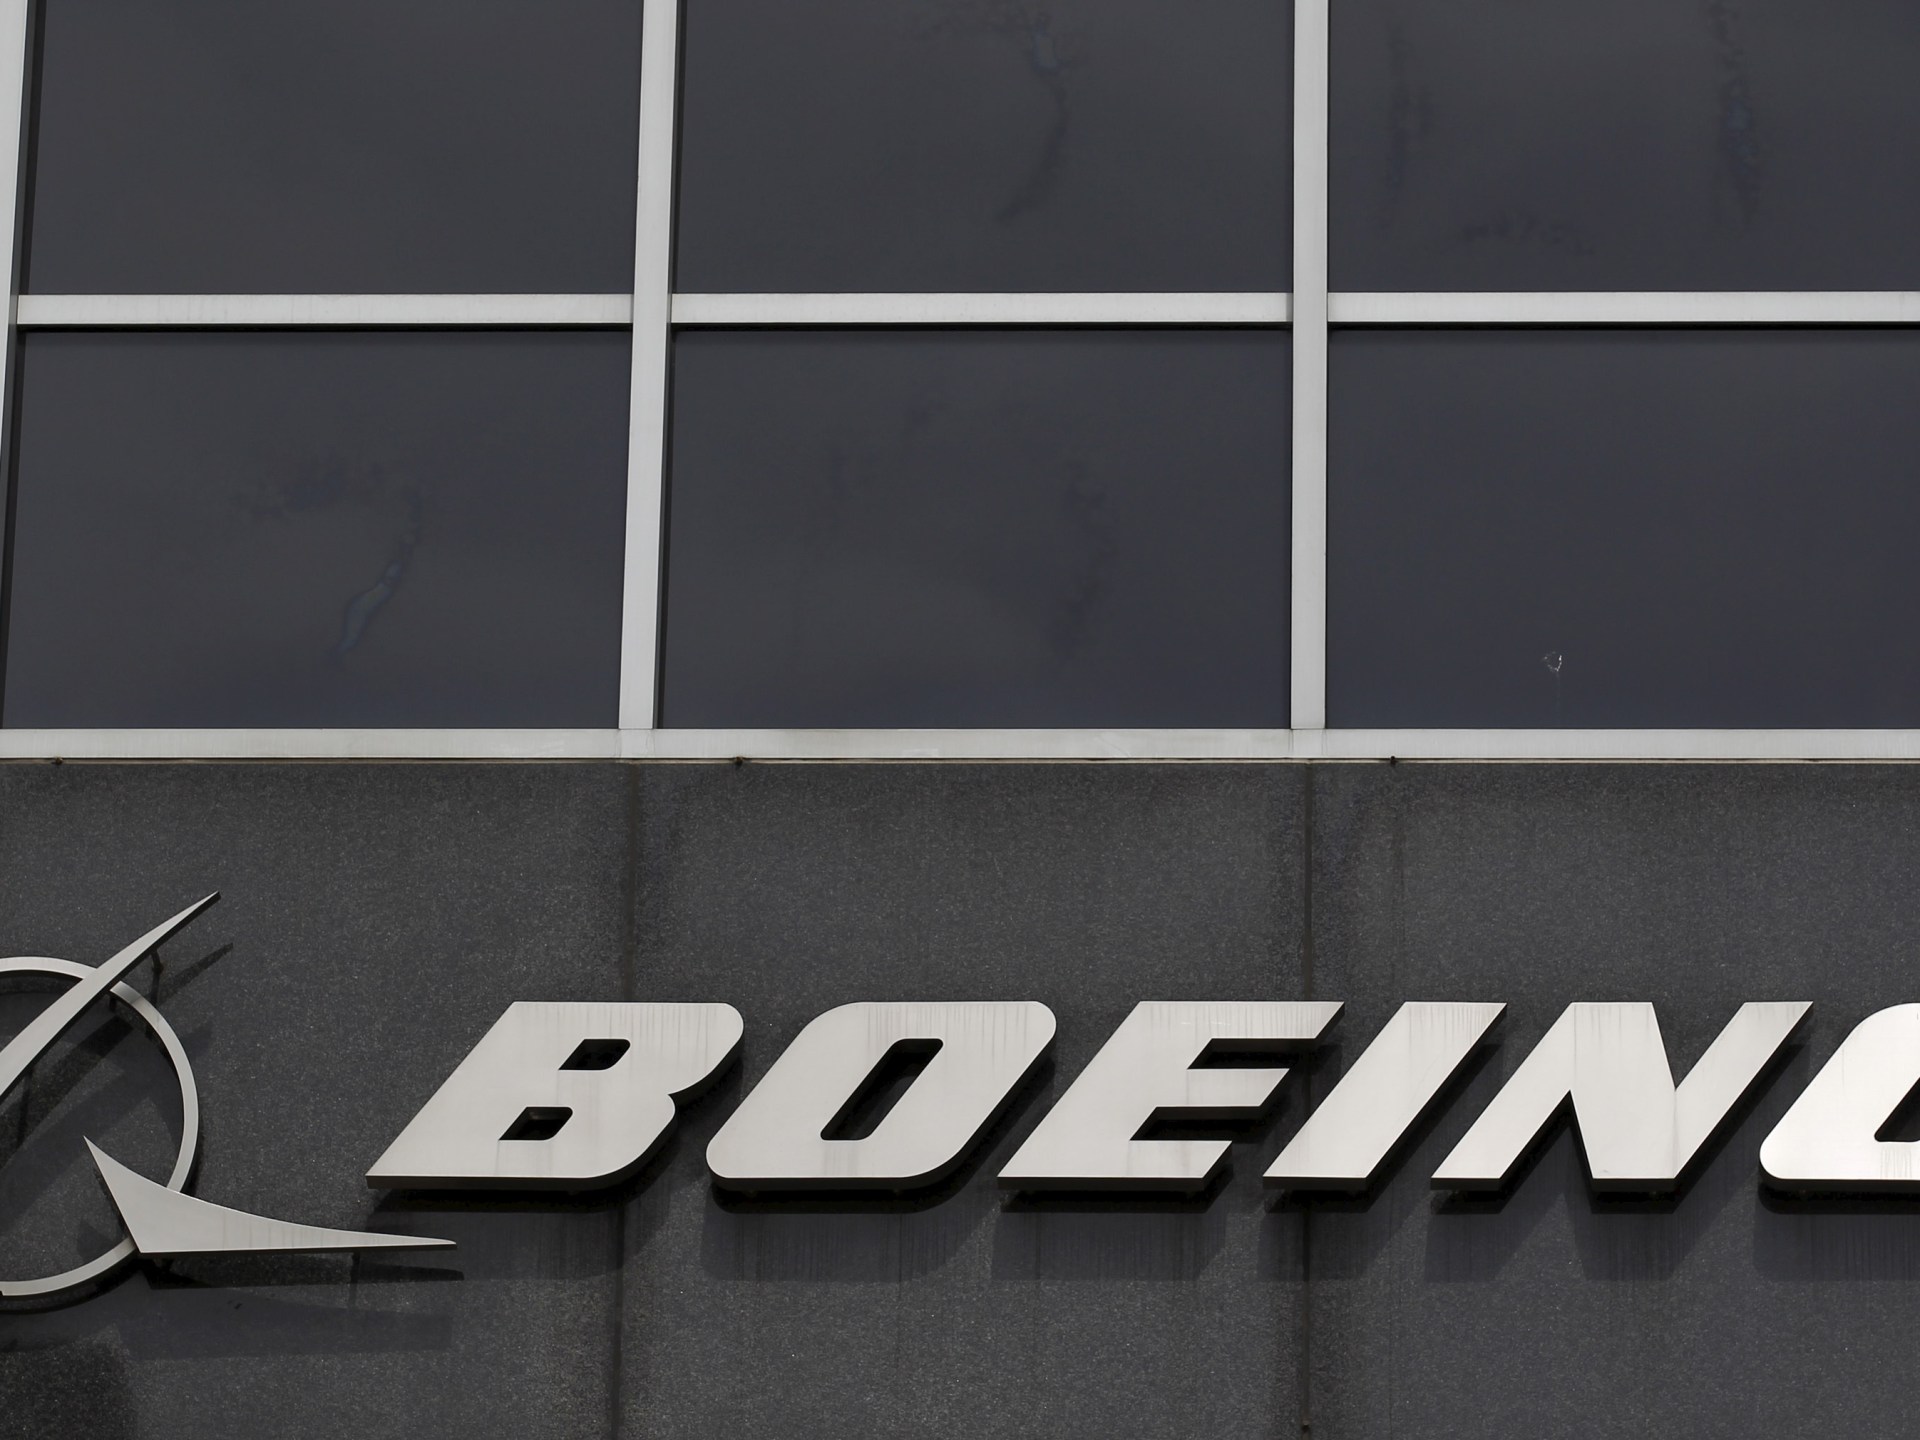 Samolot Boeinga wraca na lotnisko w Japonii z powodu pęknięcia okna w kokpicie  Wiadomości lotnicze